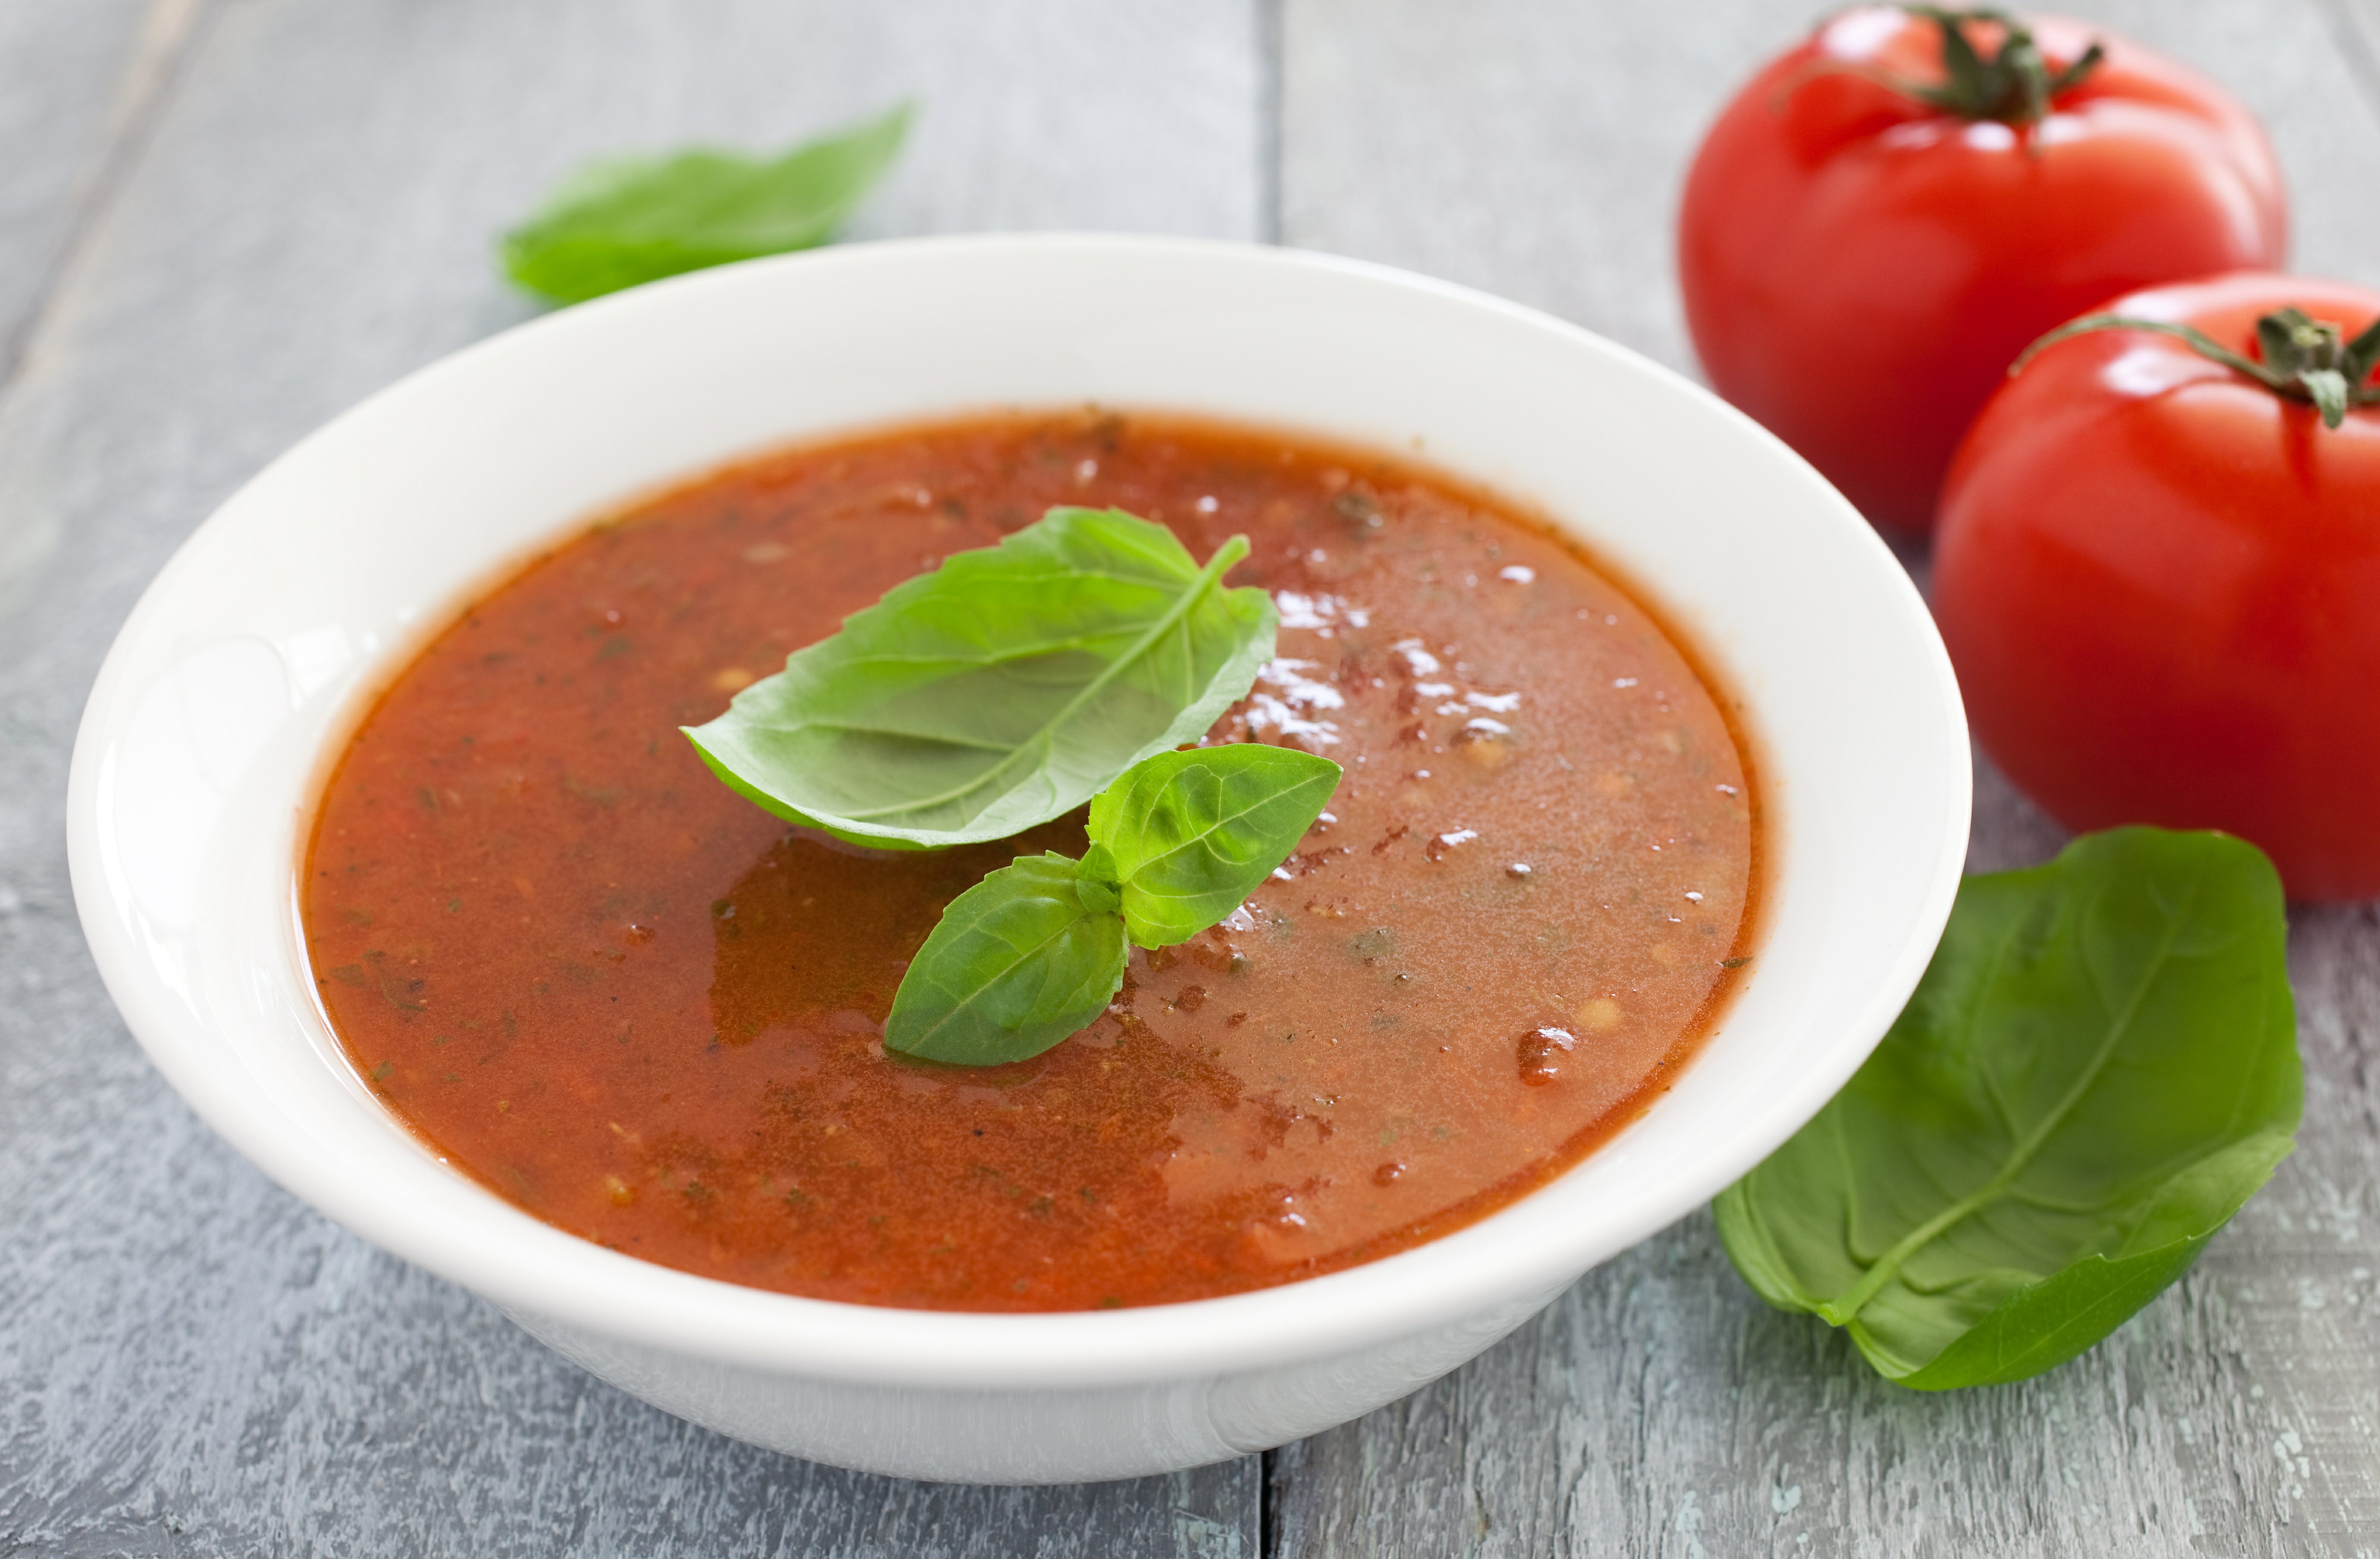 Суп томатный рецепты из свежих. Томатный магрибский суп. Томатный суп пюре. Томатный суп с чечевицей. Томатный суп-пюре с базиликом.